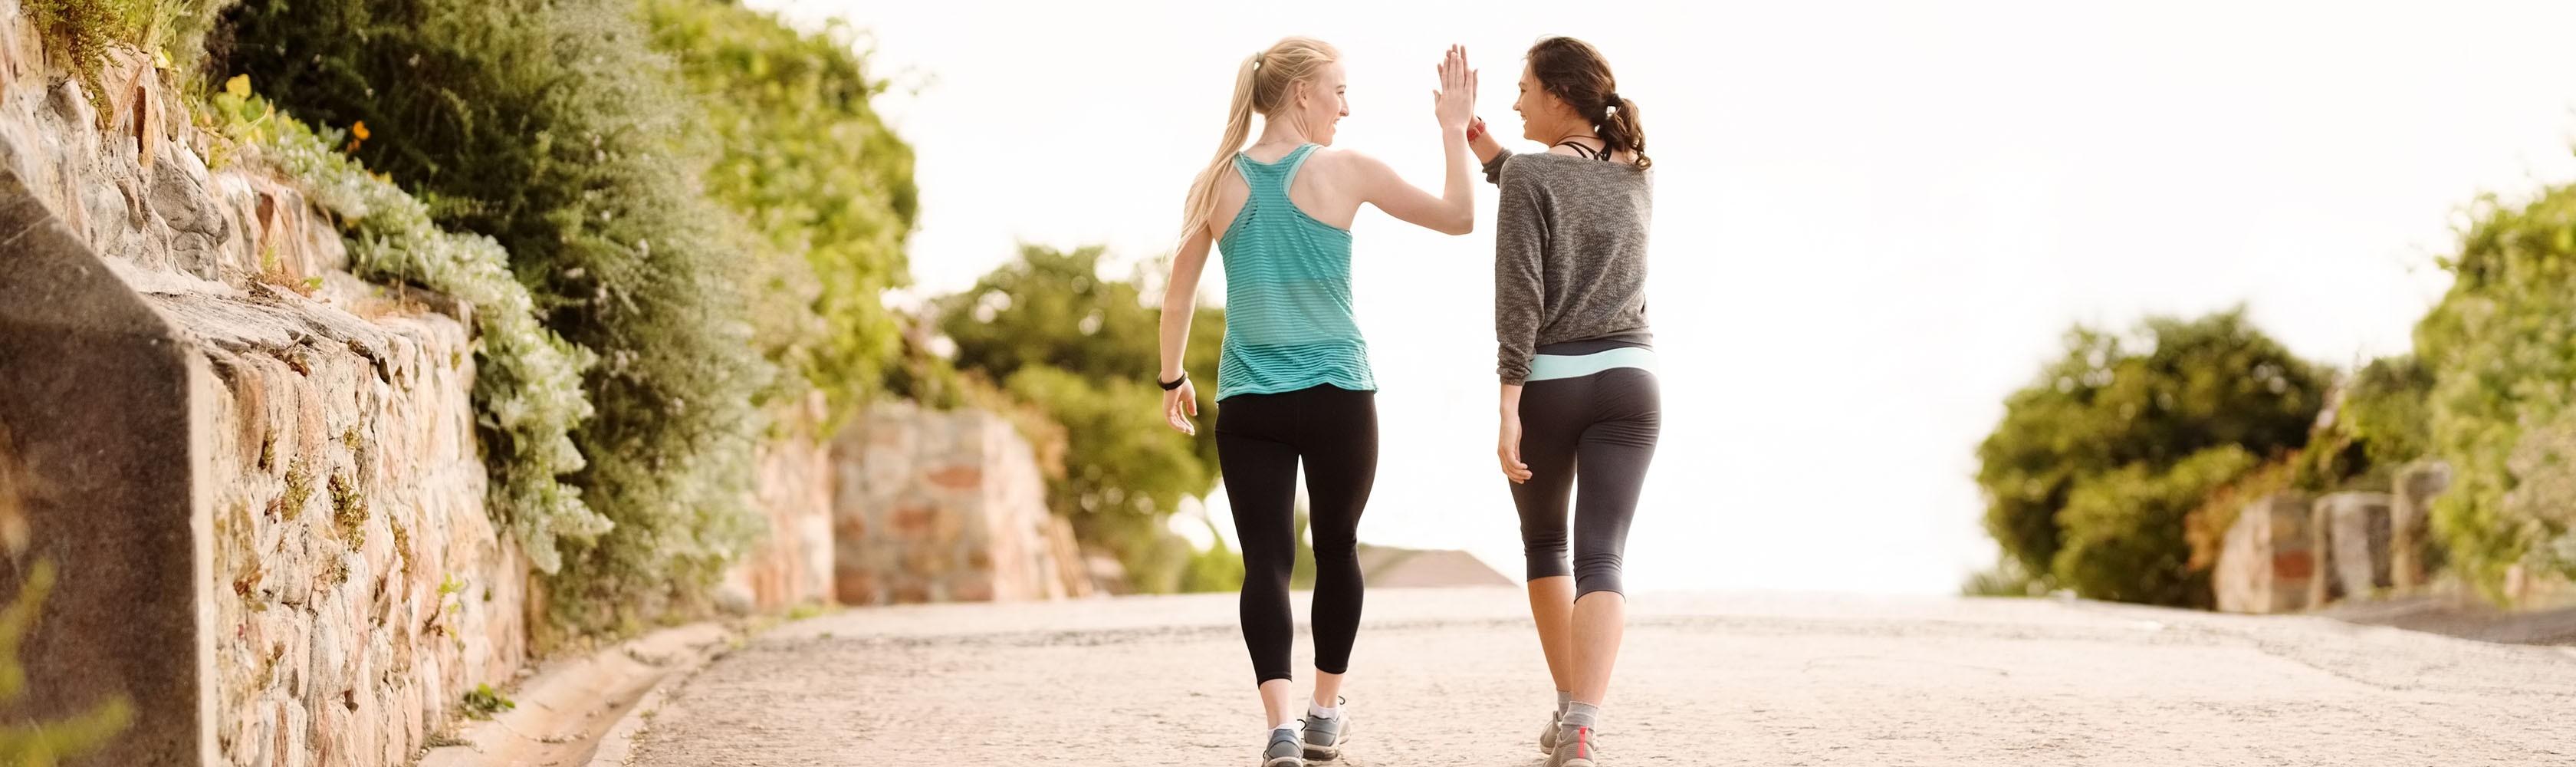 Zwei Freundinnen treffen sich zum Sport und klatschen sich zur Motivation gegenseitig ab